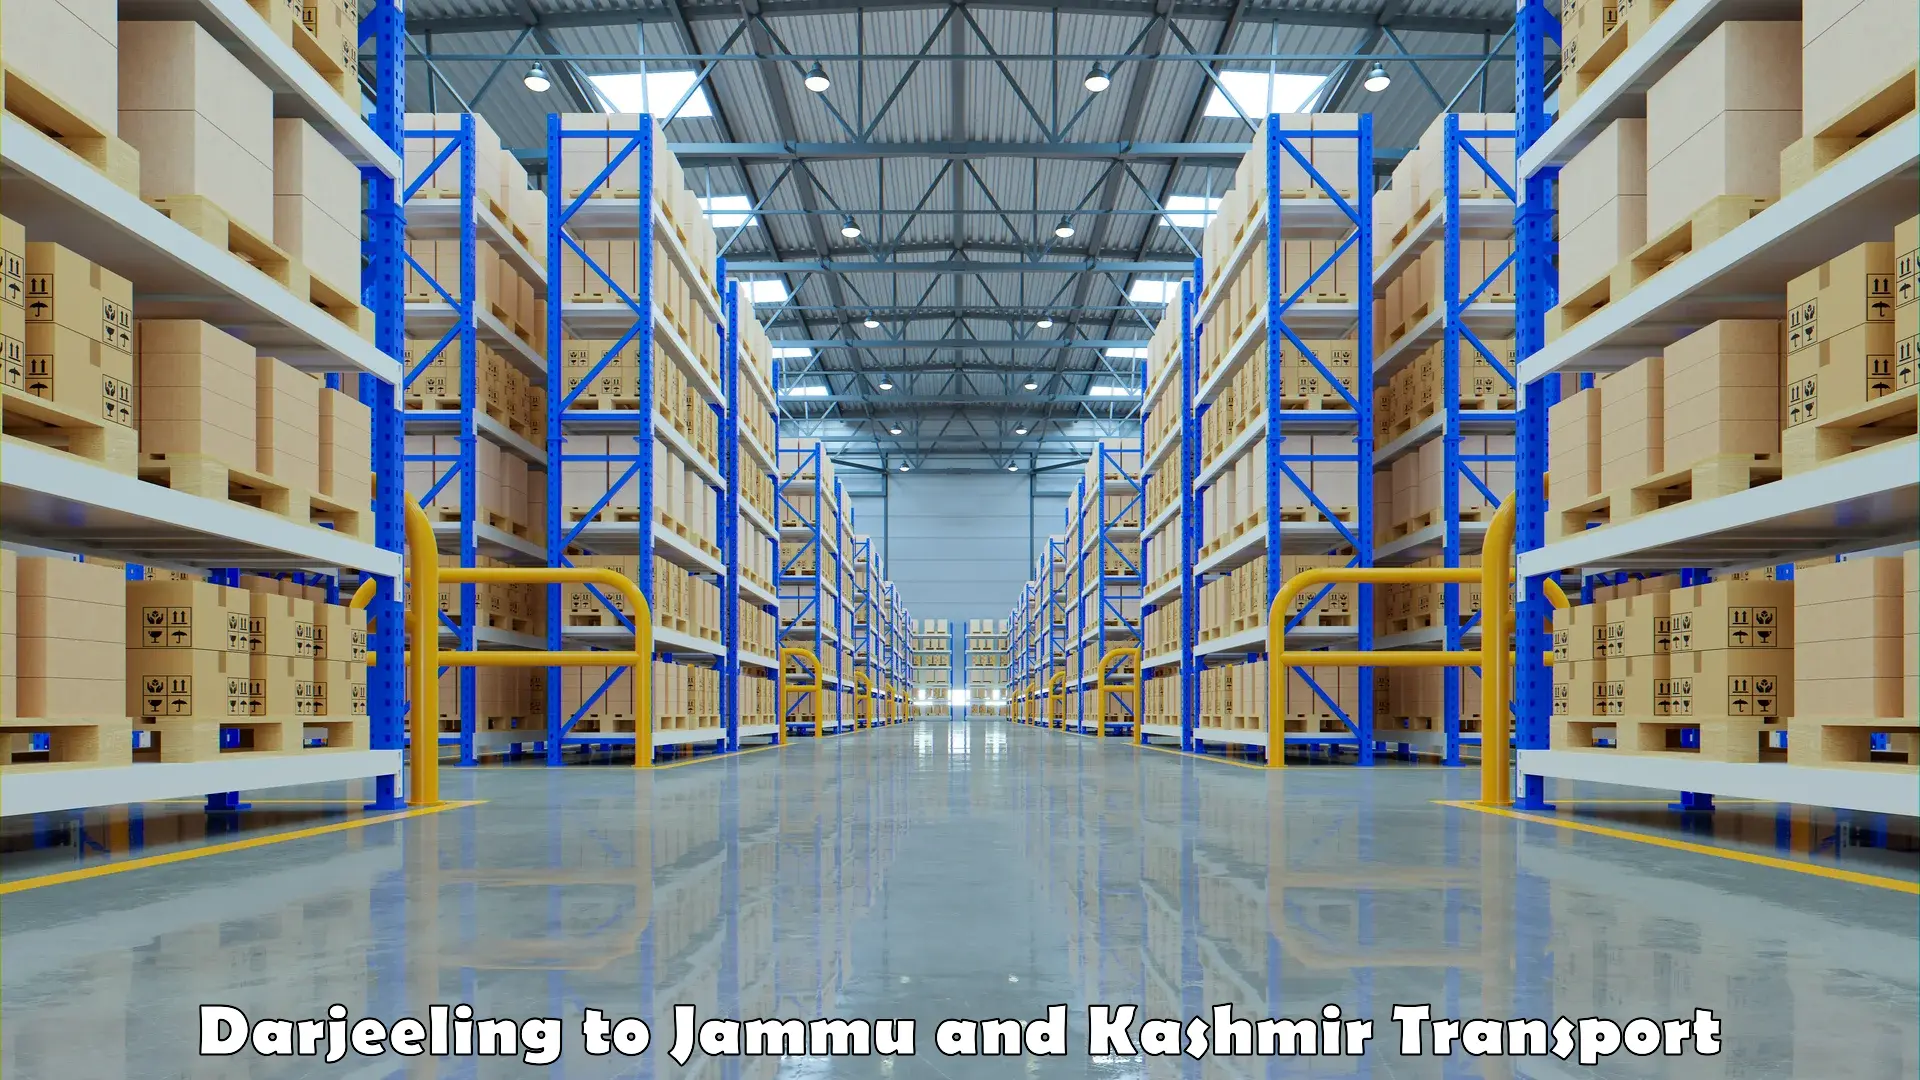 Online transport service Darjeeling to Jammu and Kashmir